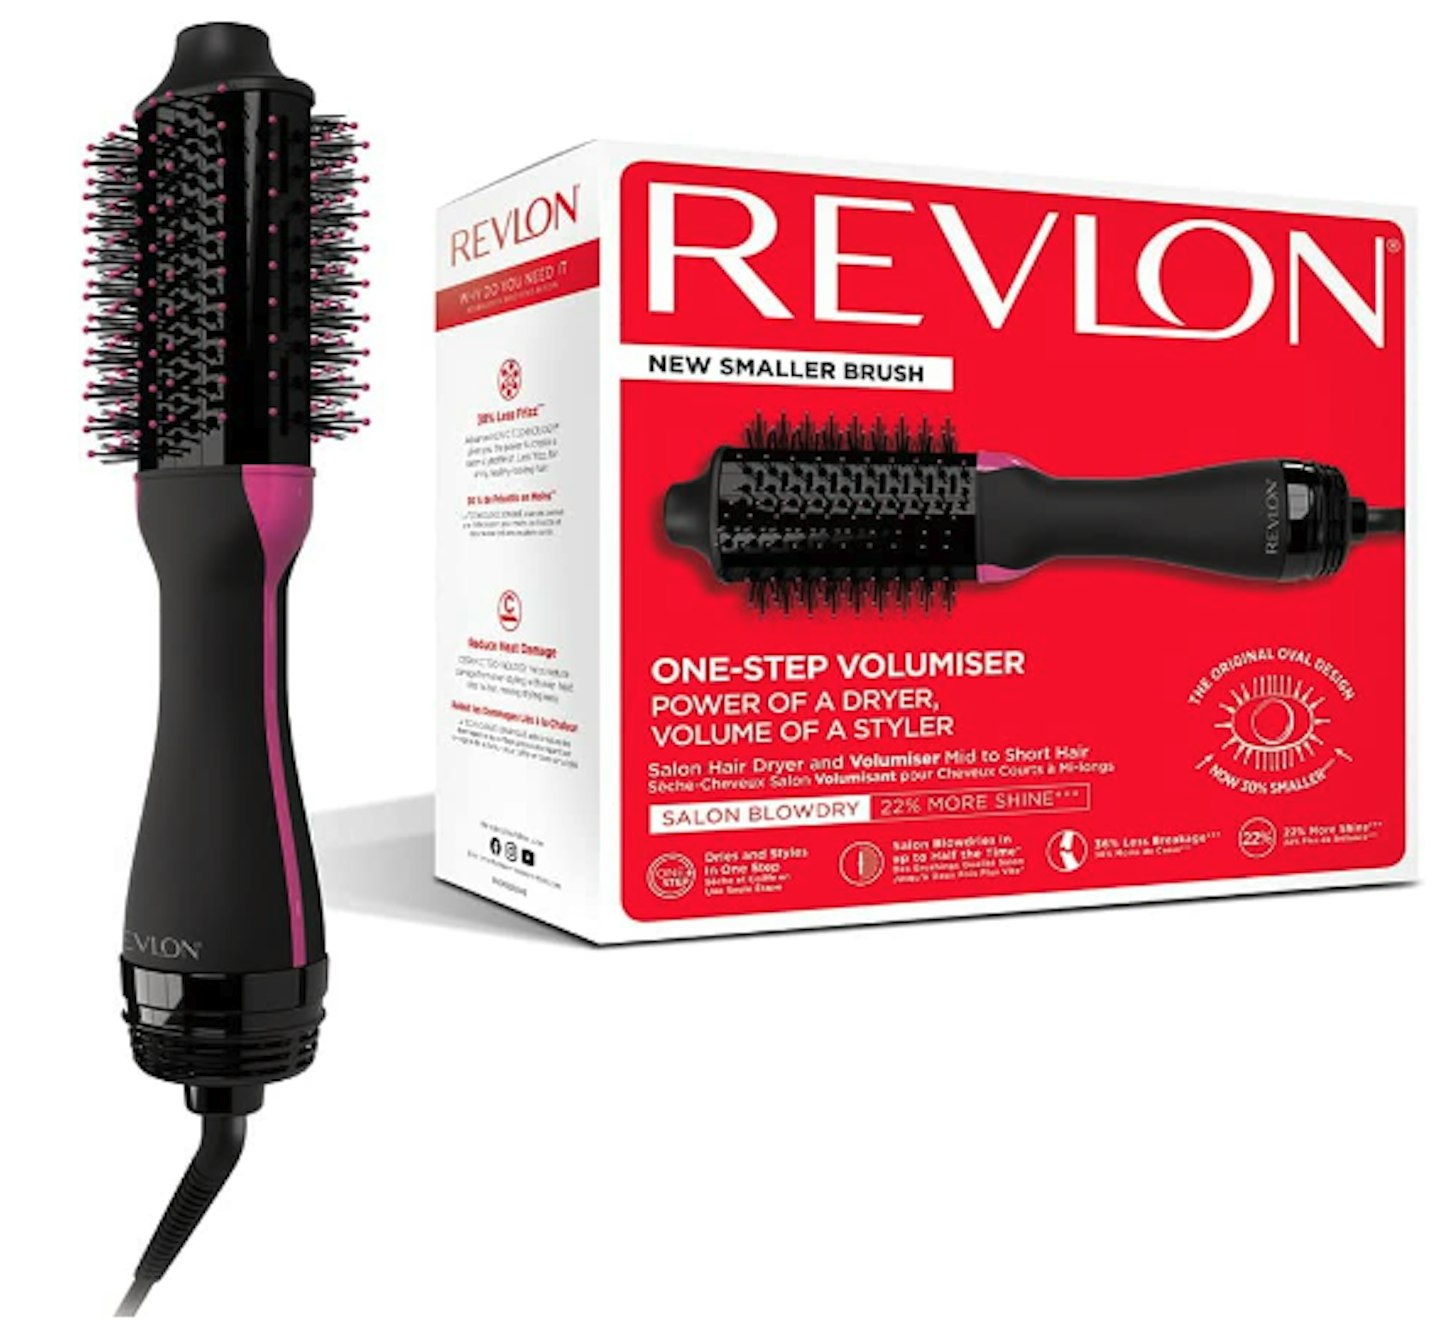 Revlon One-Step Hair Dryer and Volumiser